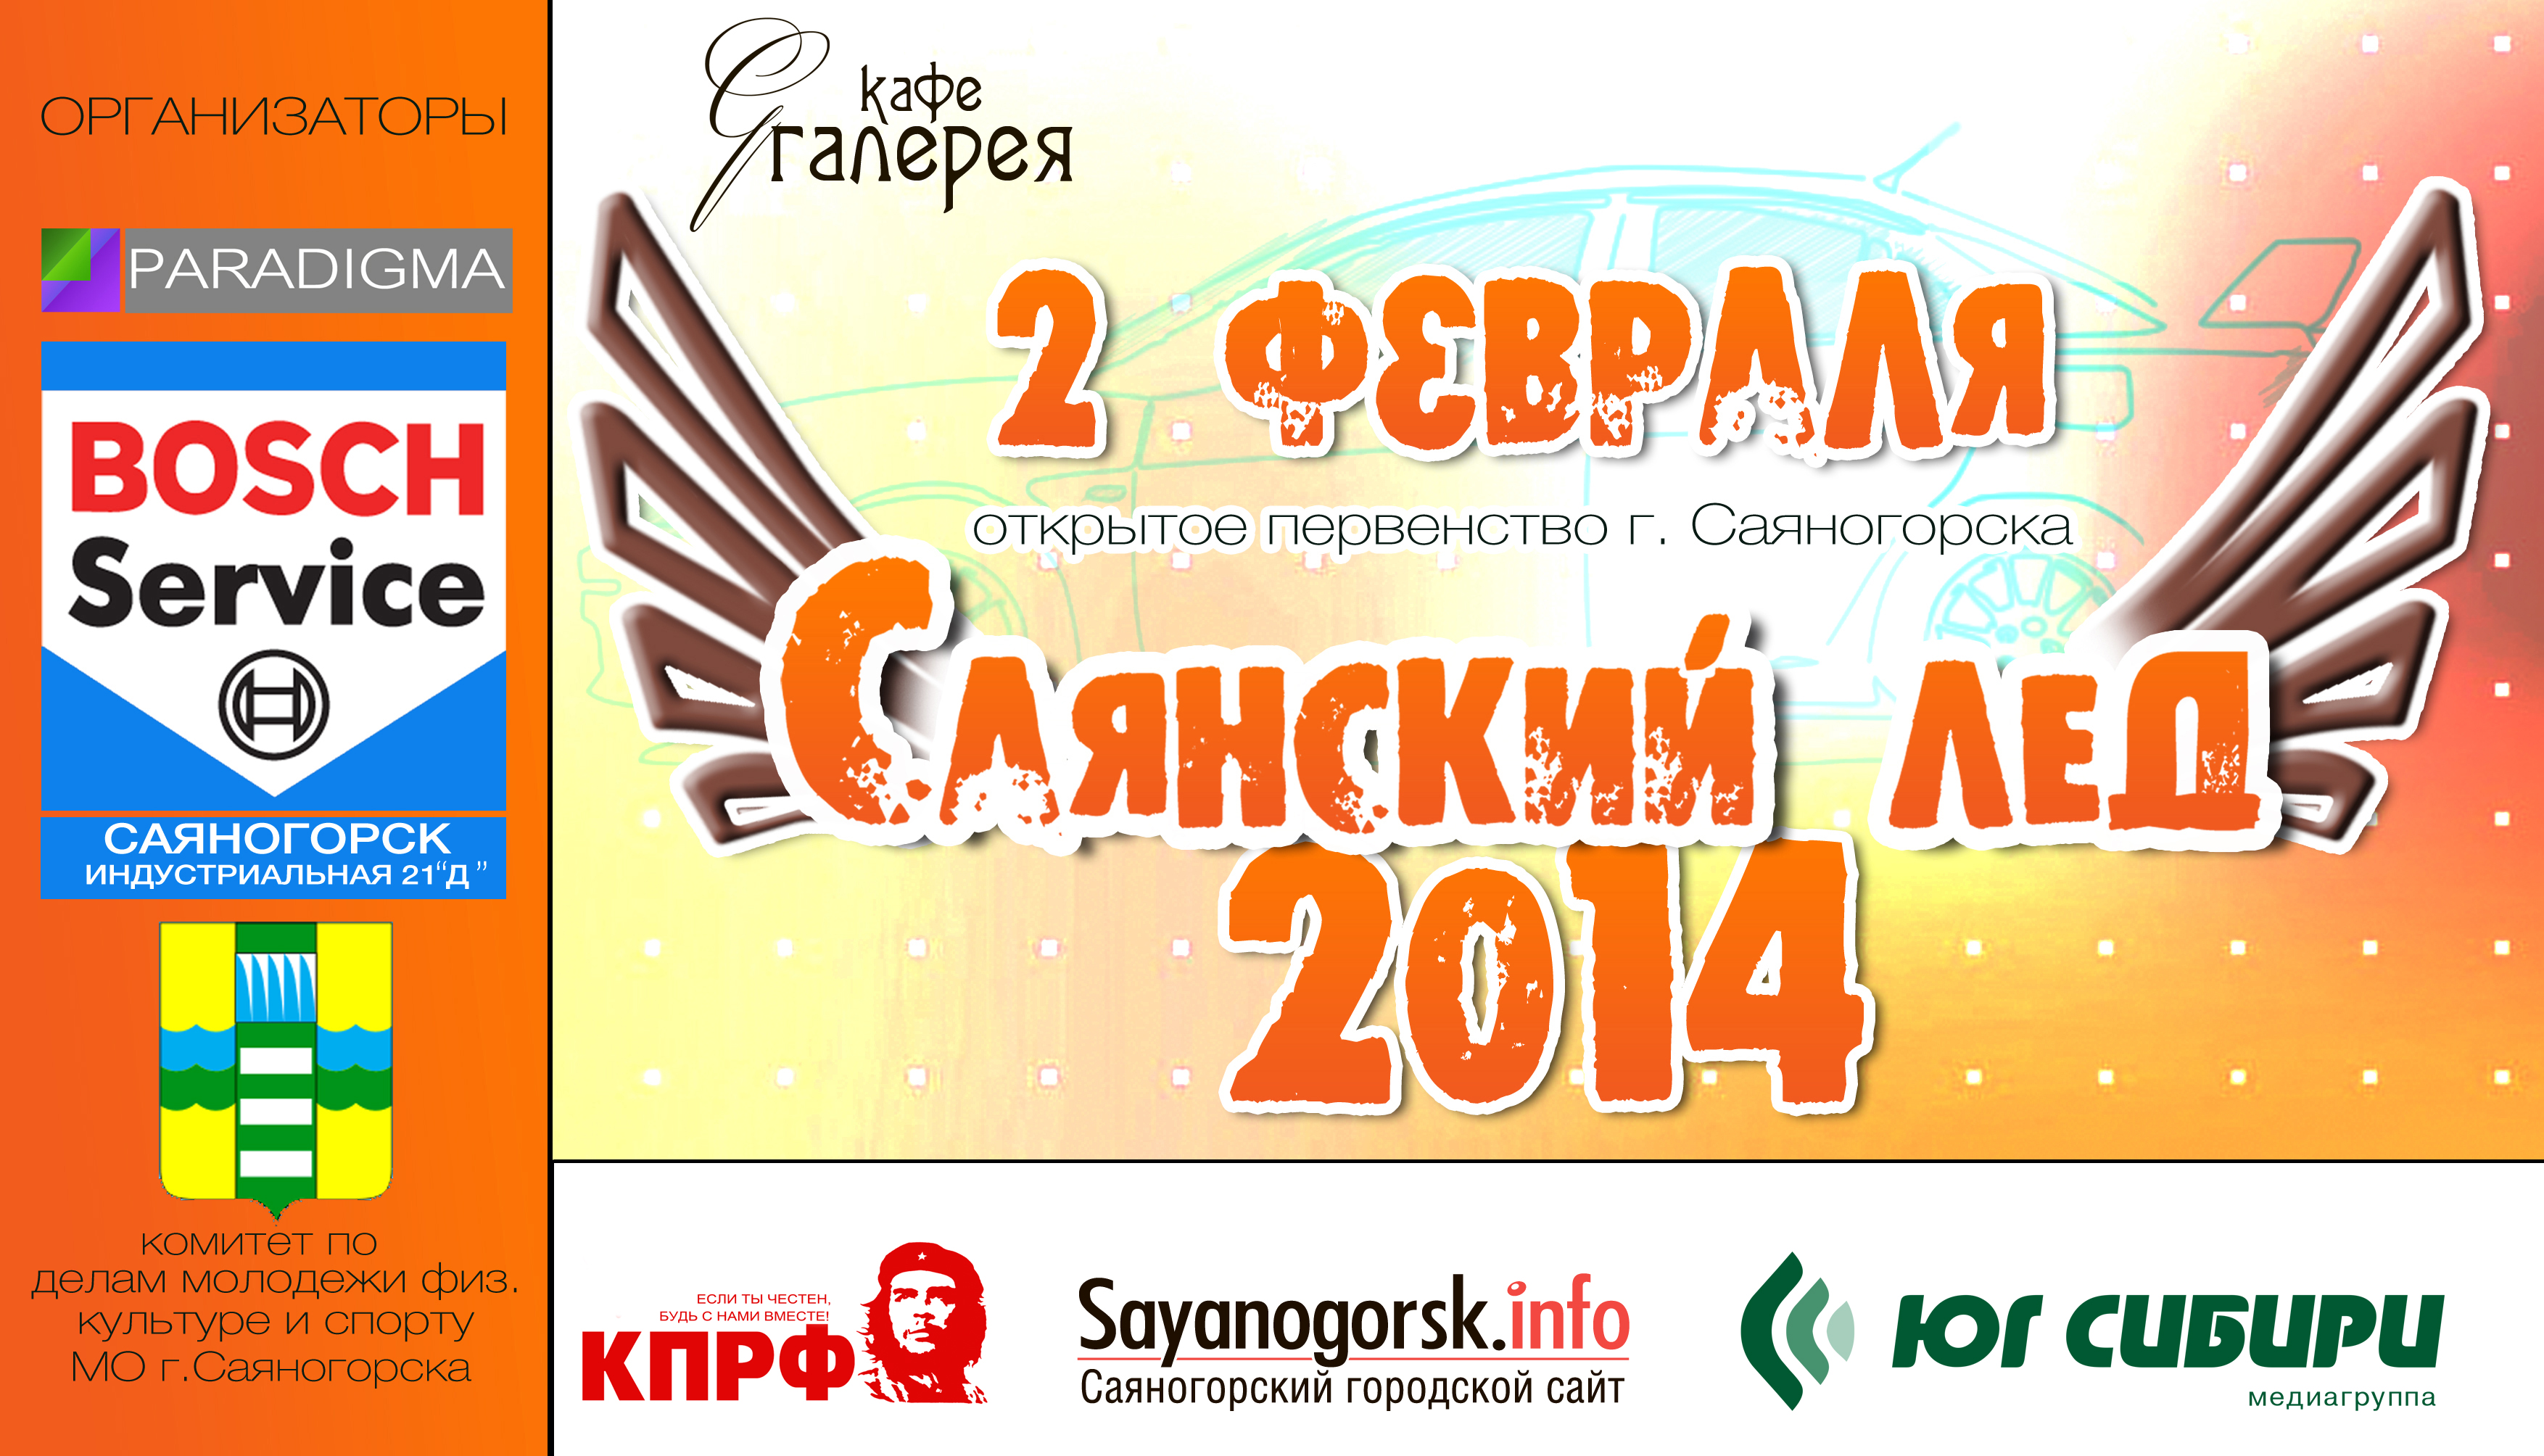 Саяногорск Инфо - logo-2014-new.jpg, Скачано: 1513